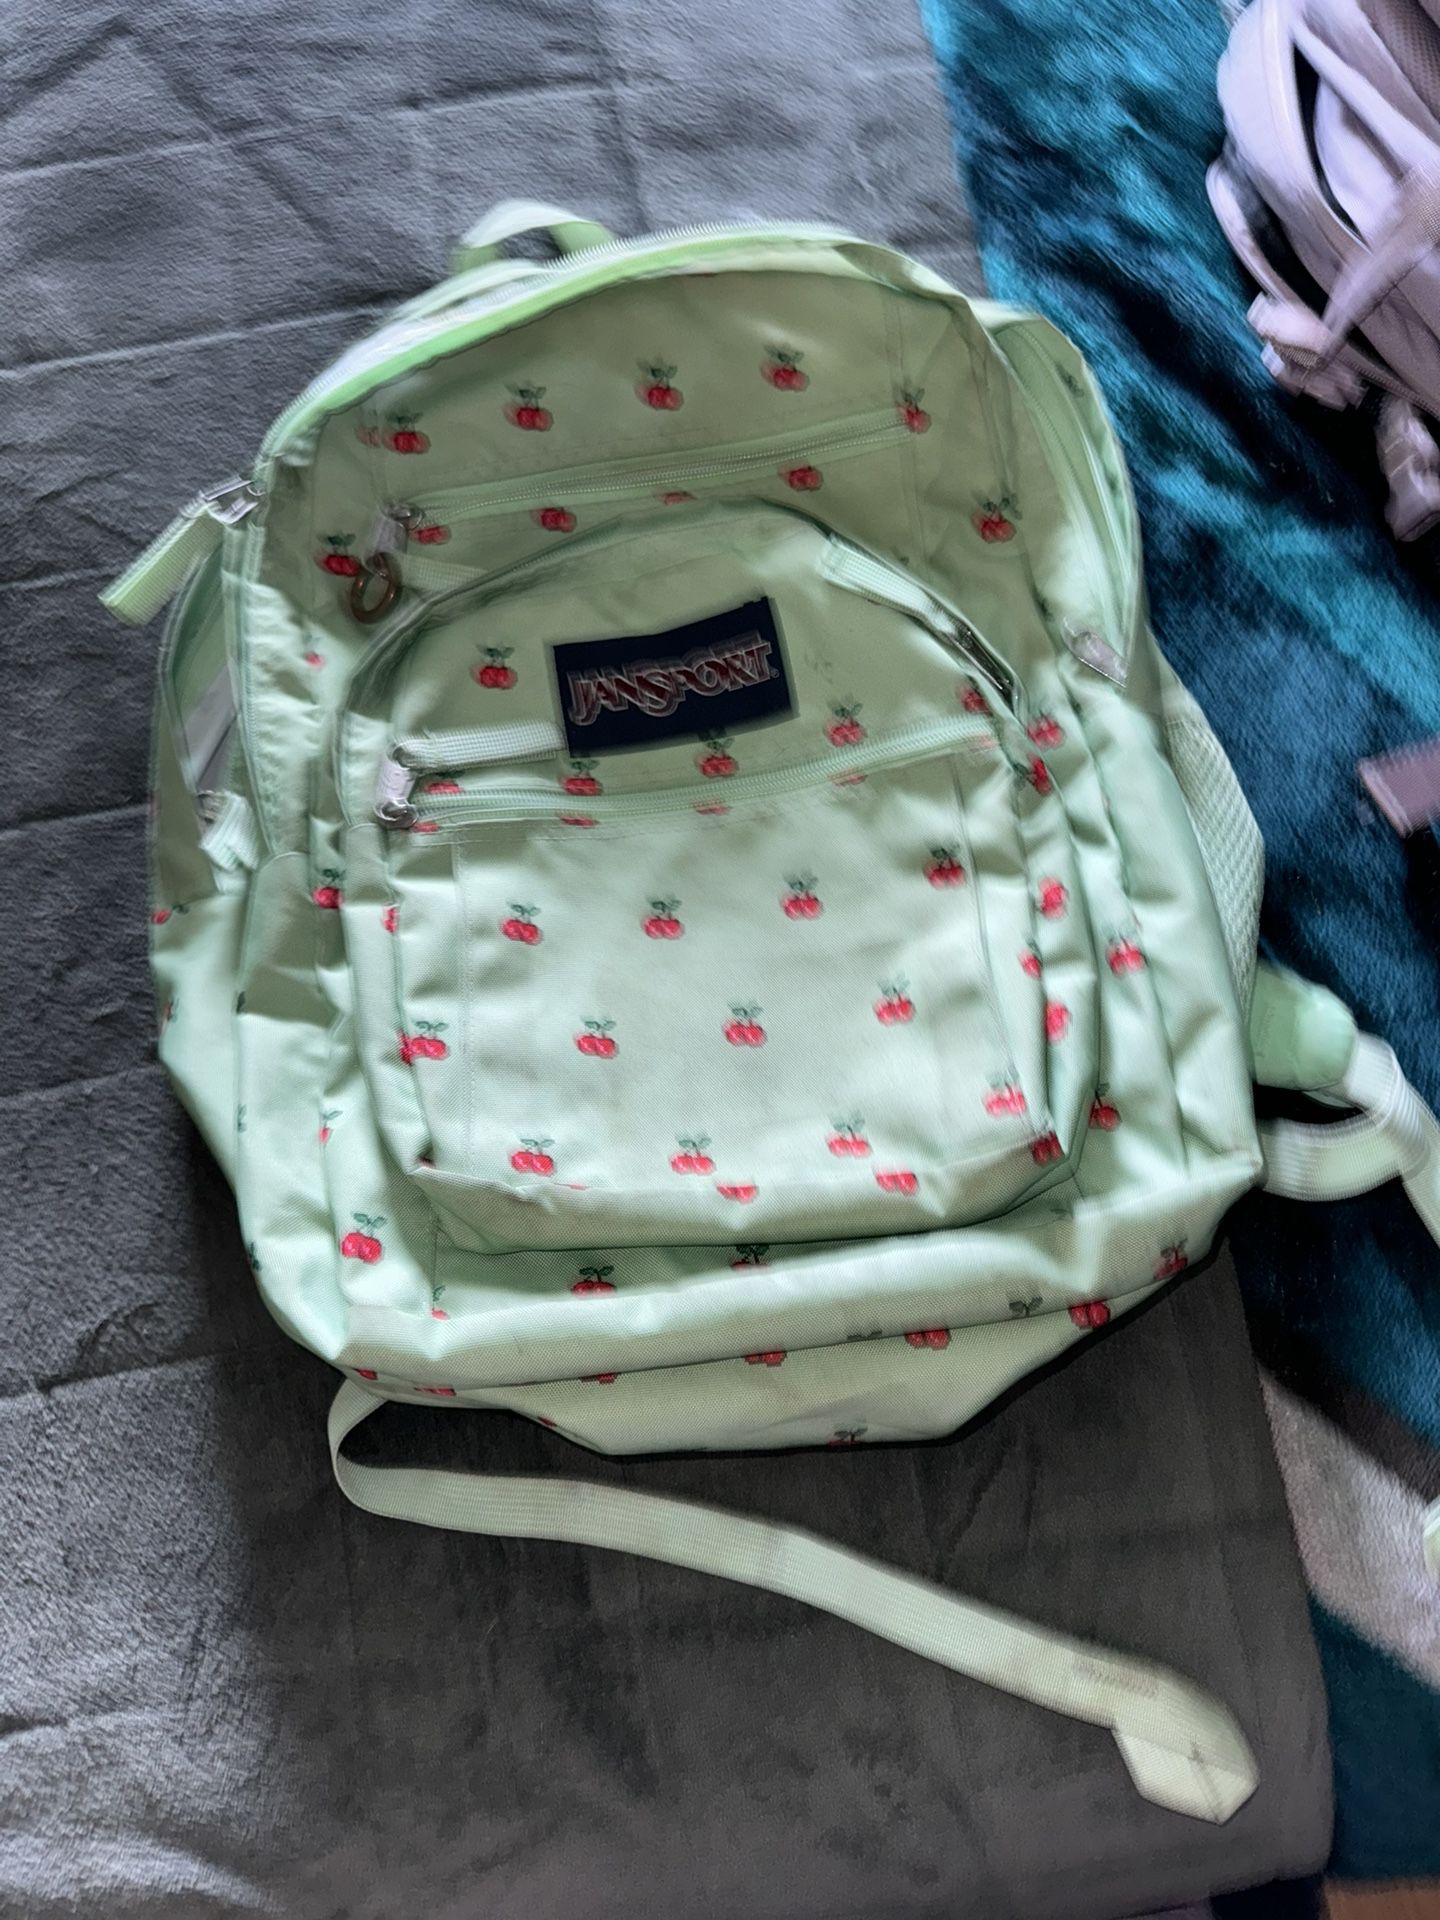 JanSport Backpack 